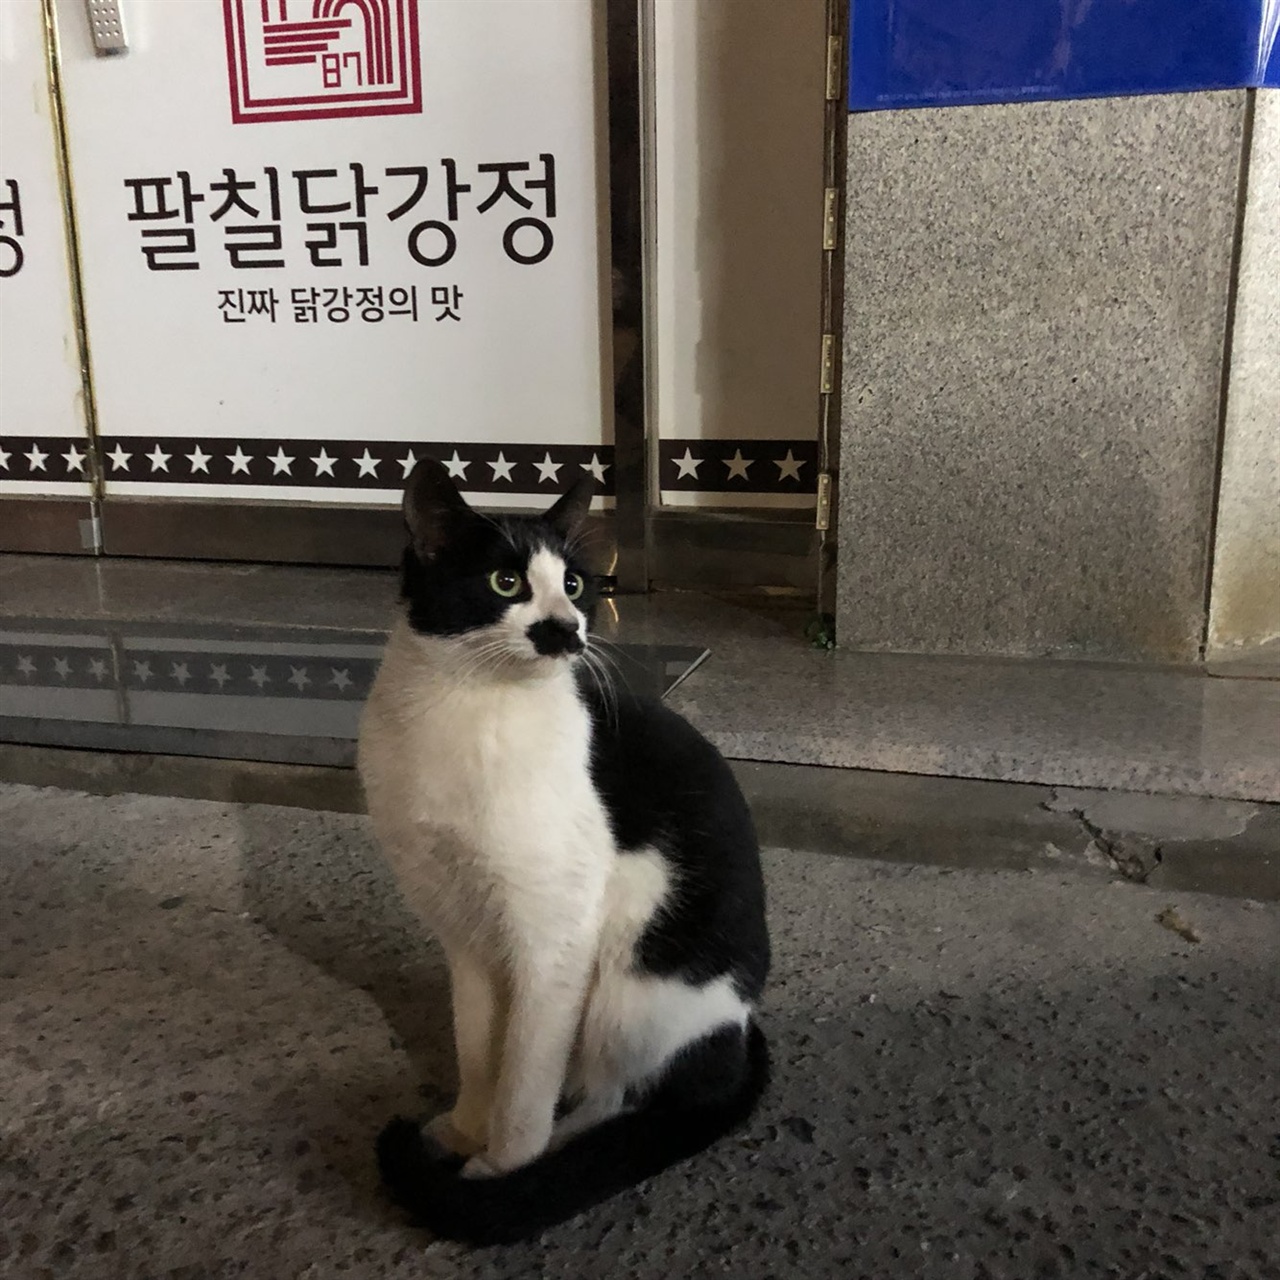 빌딩에서 탈출한 후 동네 음식점앞에 앉아있는 그 고양이. 자기 구역인듯 당당하게 앉아있다.